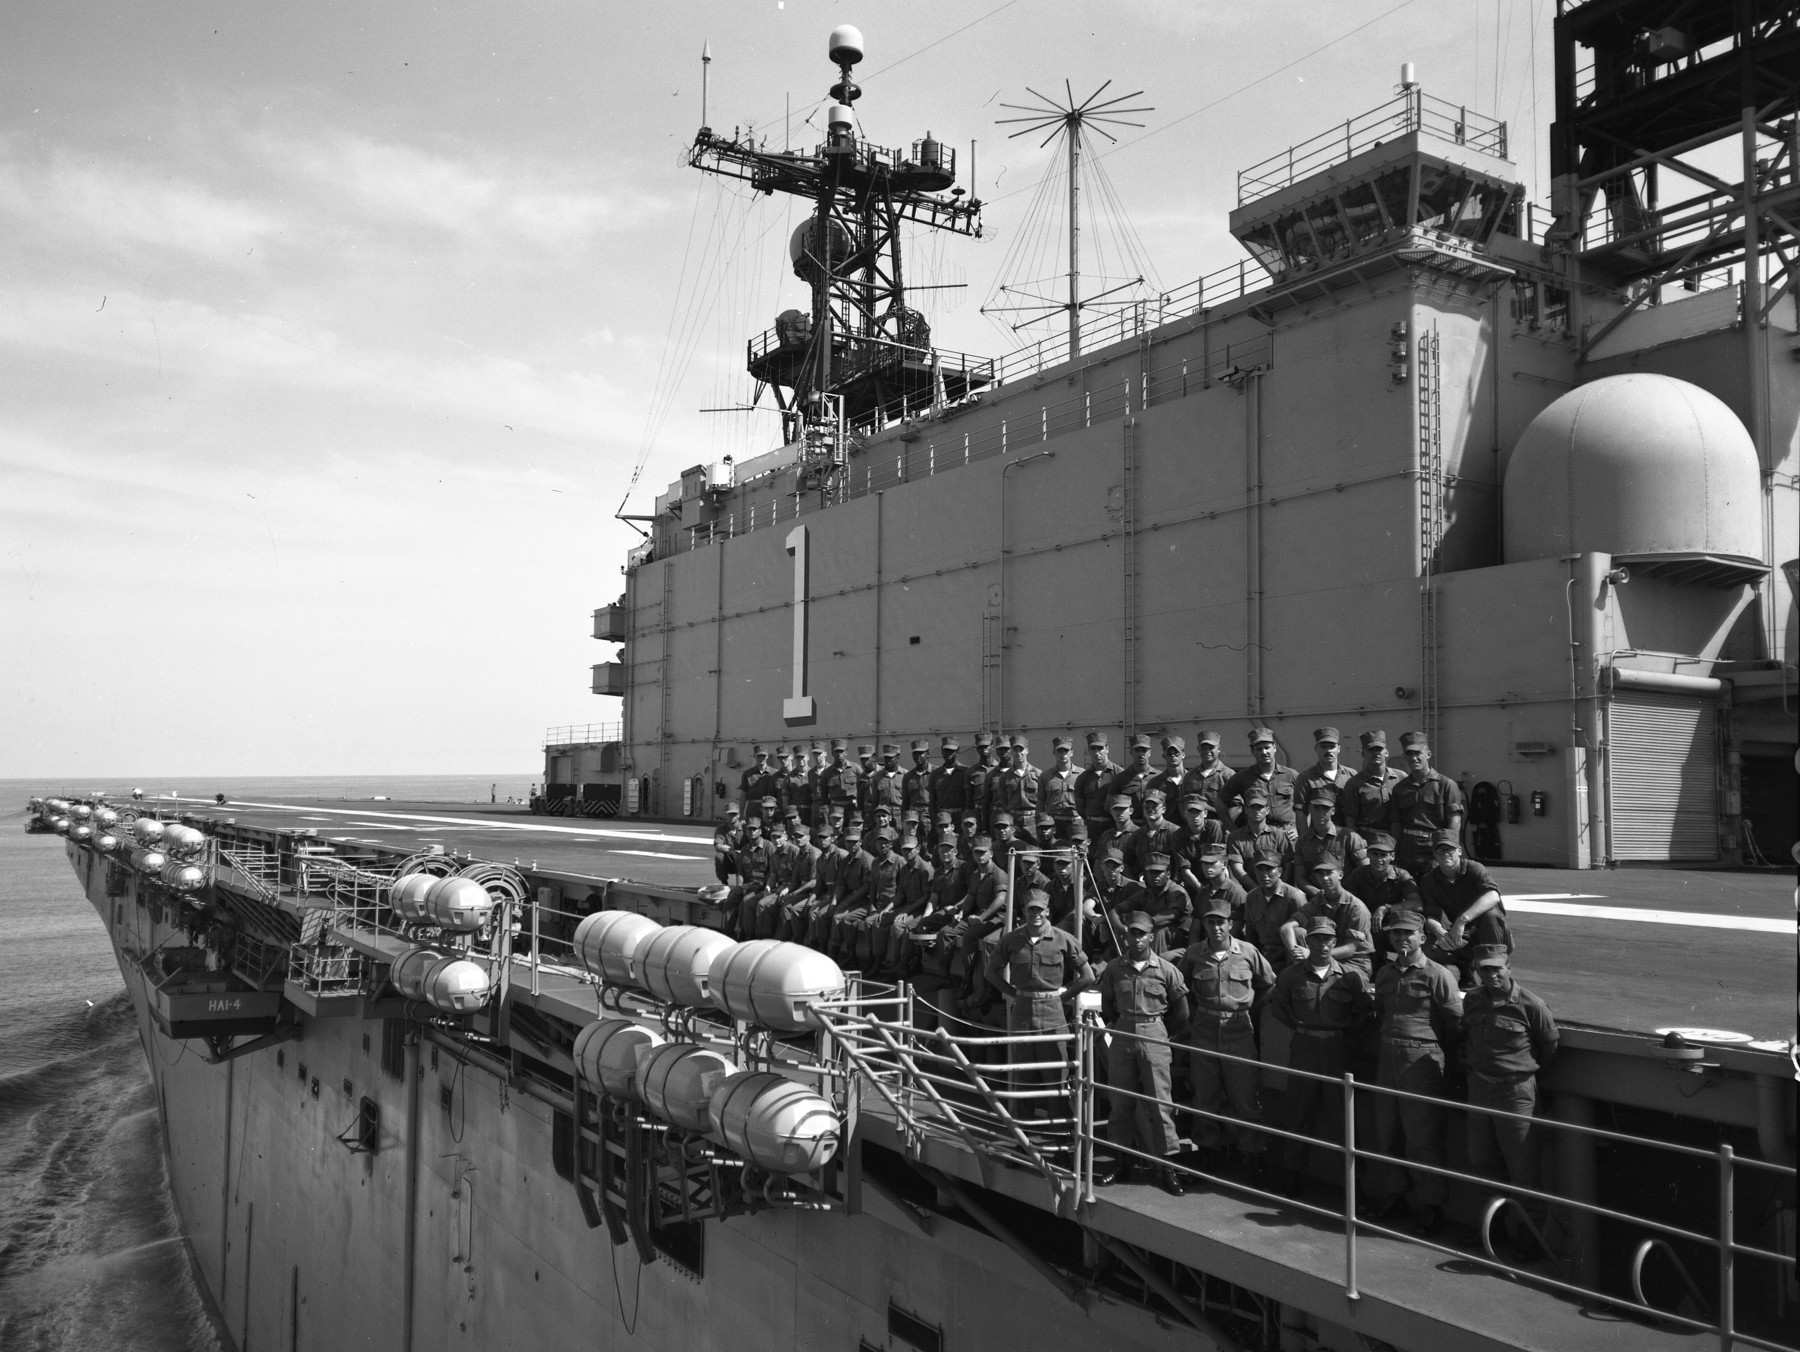 lha-1 uss tarawa amphibious assault ship us navy 57